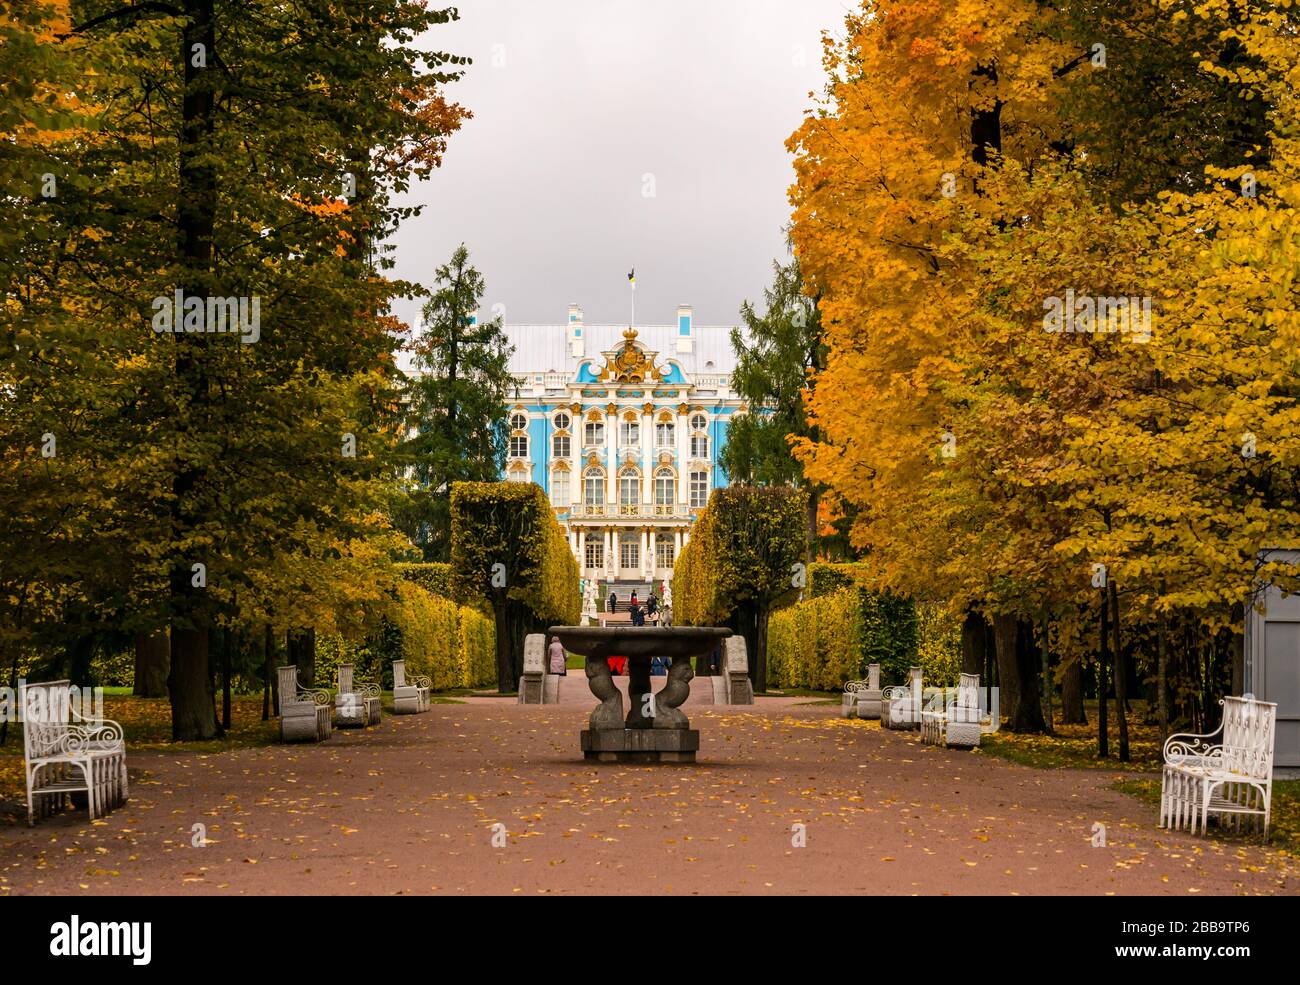 Viale con fontana che conduce al Palazzo di Caterina con alberi d'autunno, Tsars Village, Tsarskoe Selo, Pushkin, Federazione russa Foto Stock